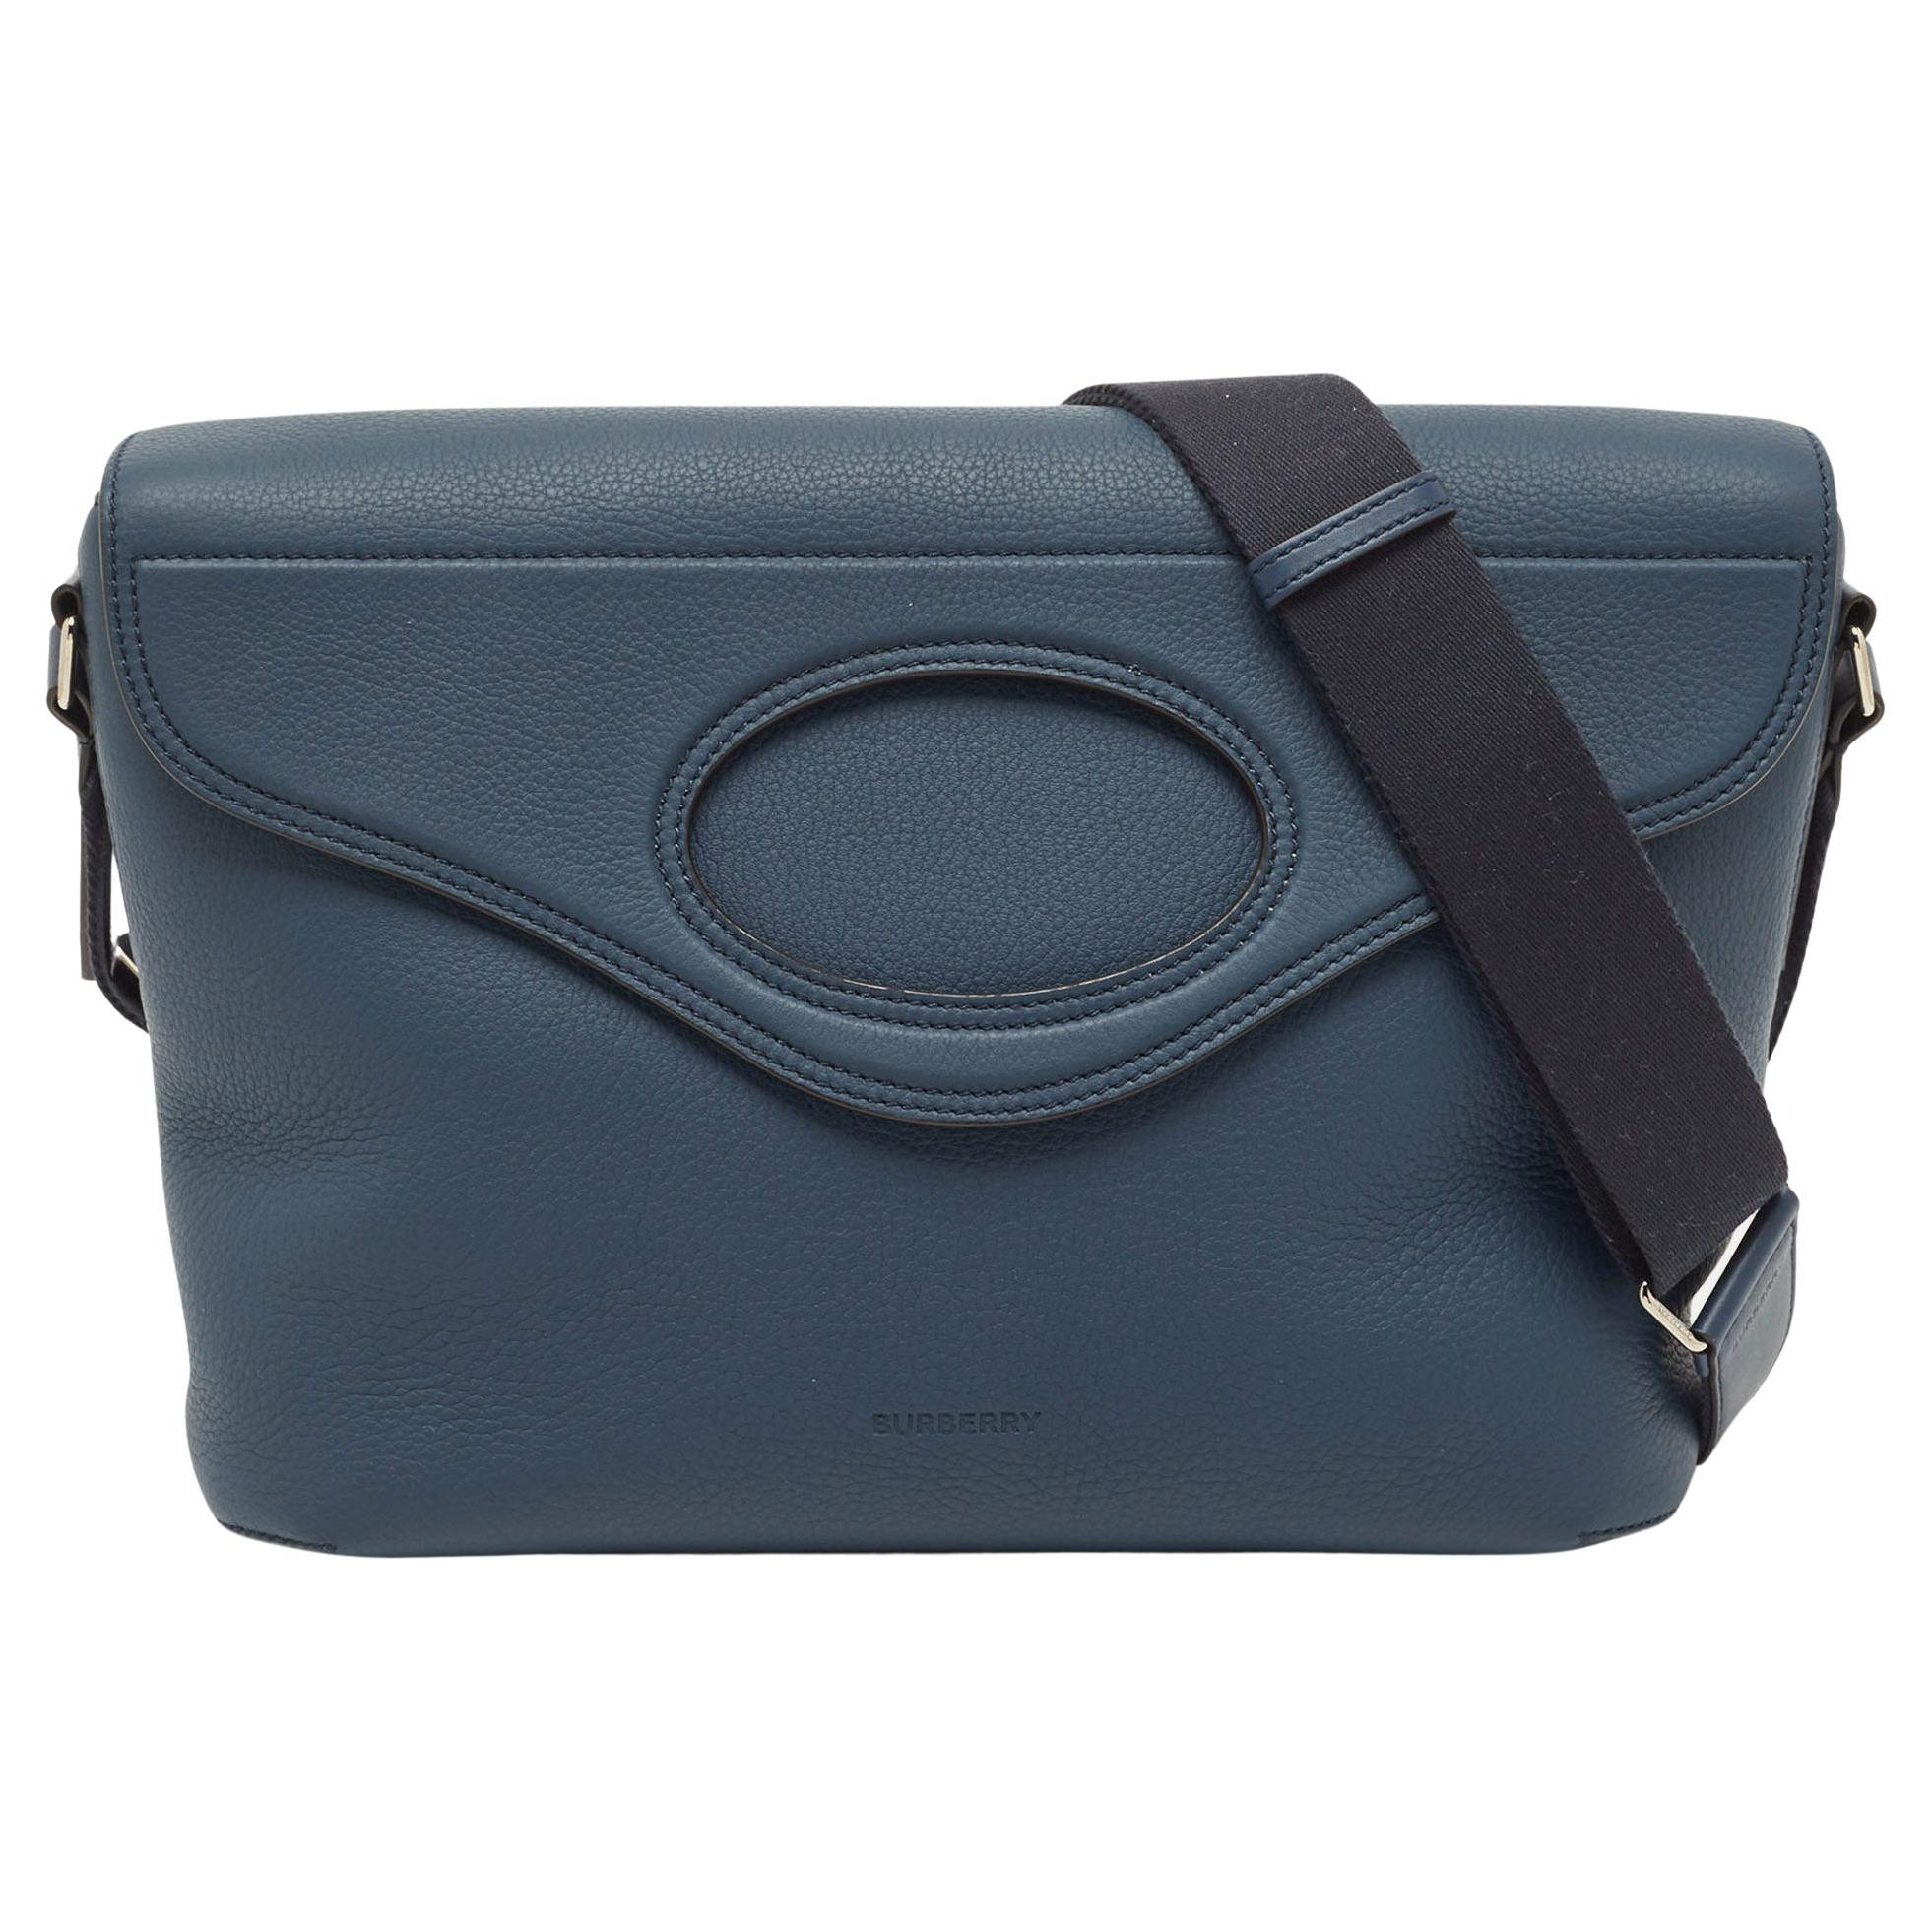 Burberry Blue Leather Large Pocket Messenger Bag